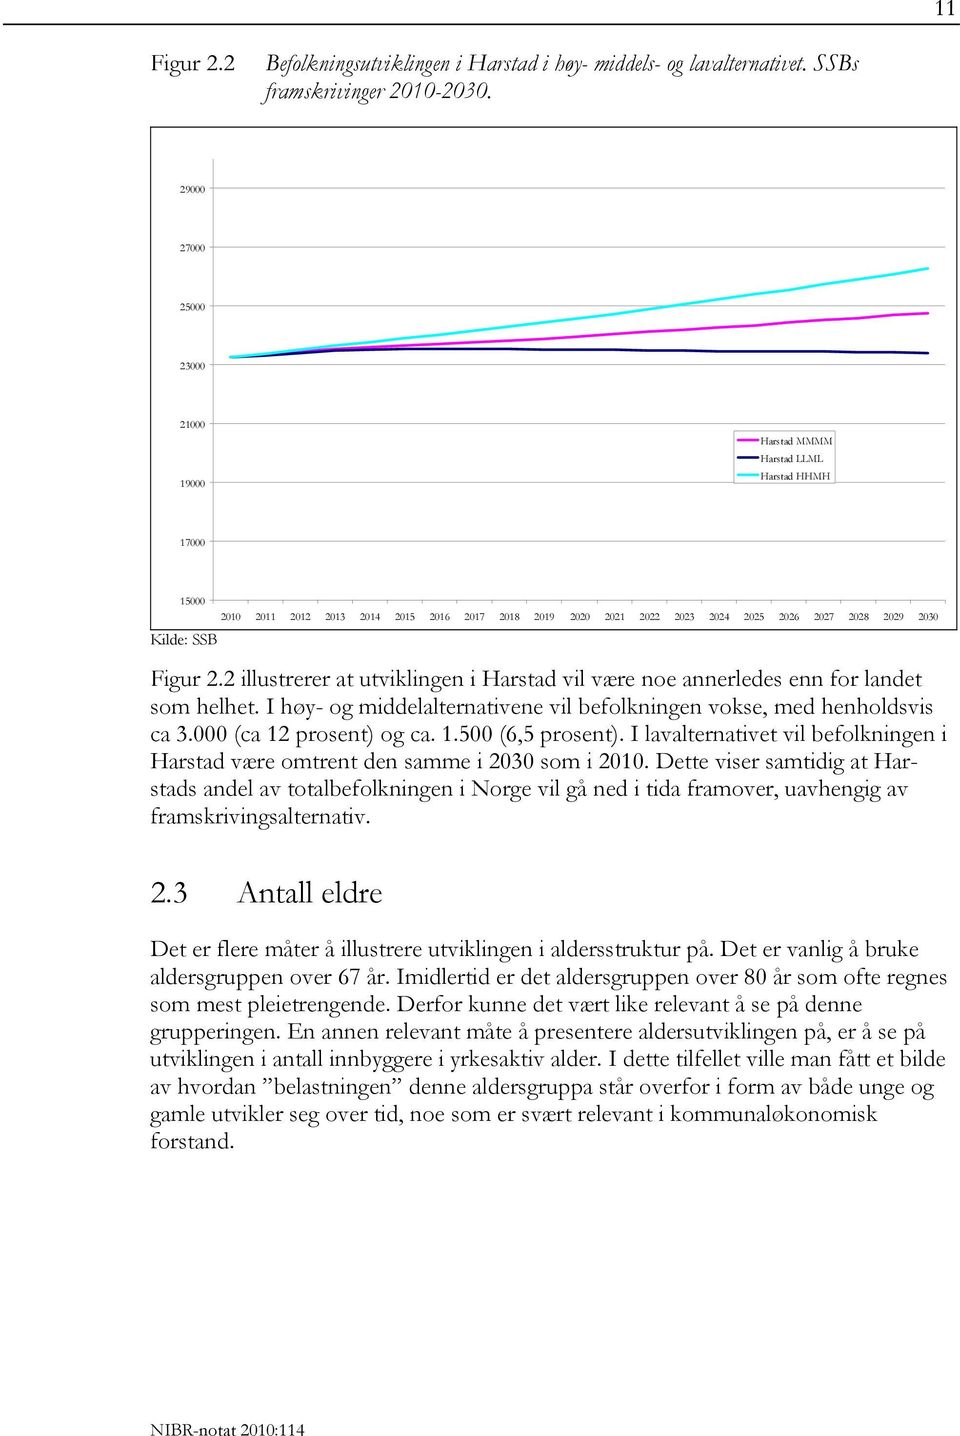 2030 Figur 2.2 illustrerer at utviklingen i Harstad vil være noe annerledes enn for landet som helhet. I høy- og middelalternativene vil befolkningen vokse, med henholdsvis ca 3.